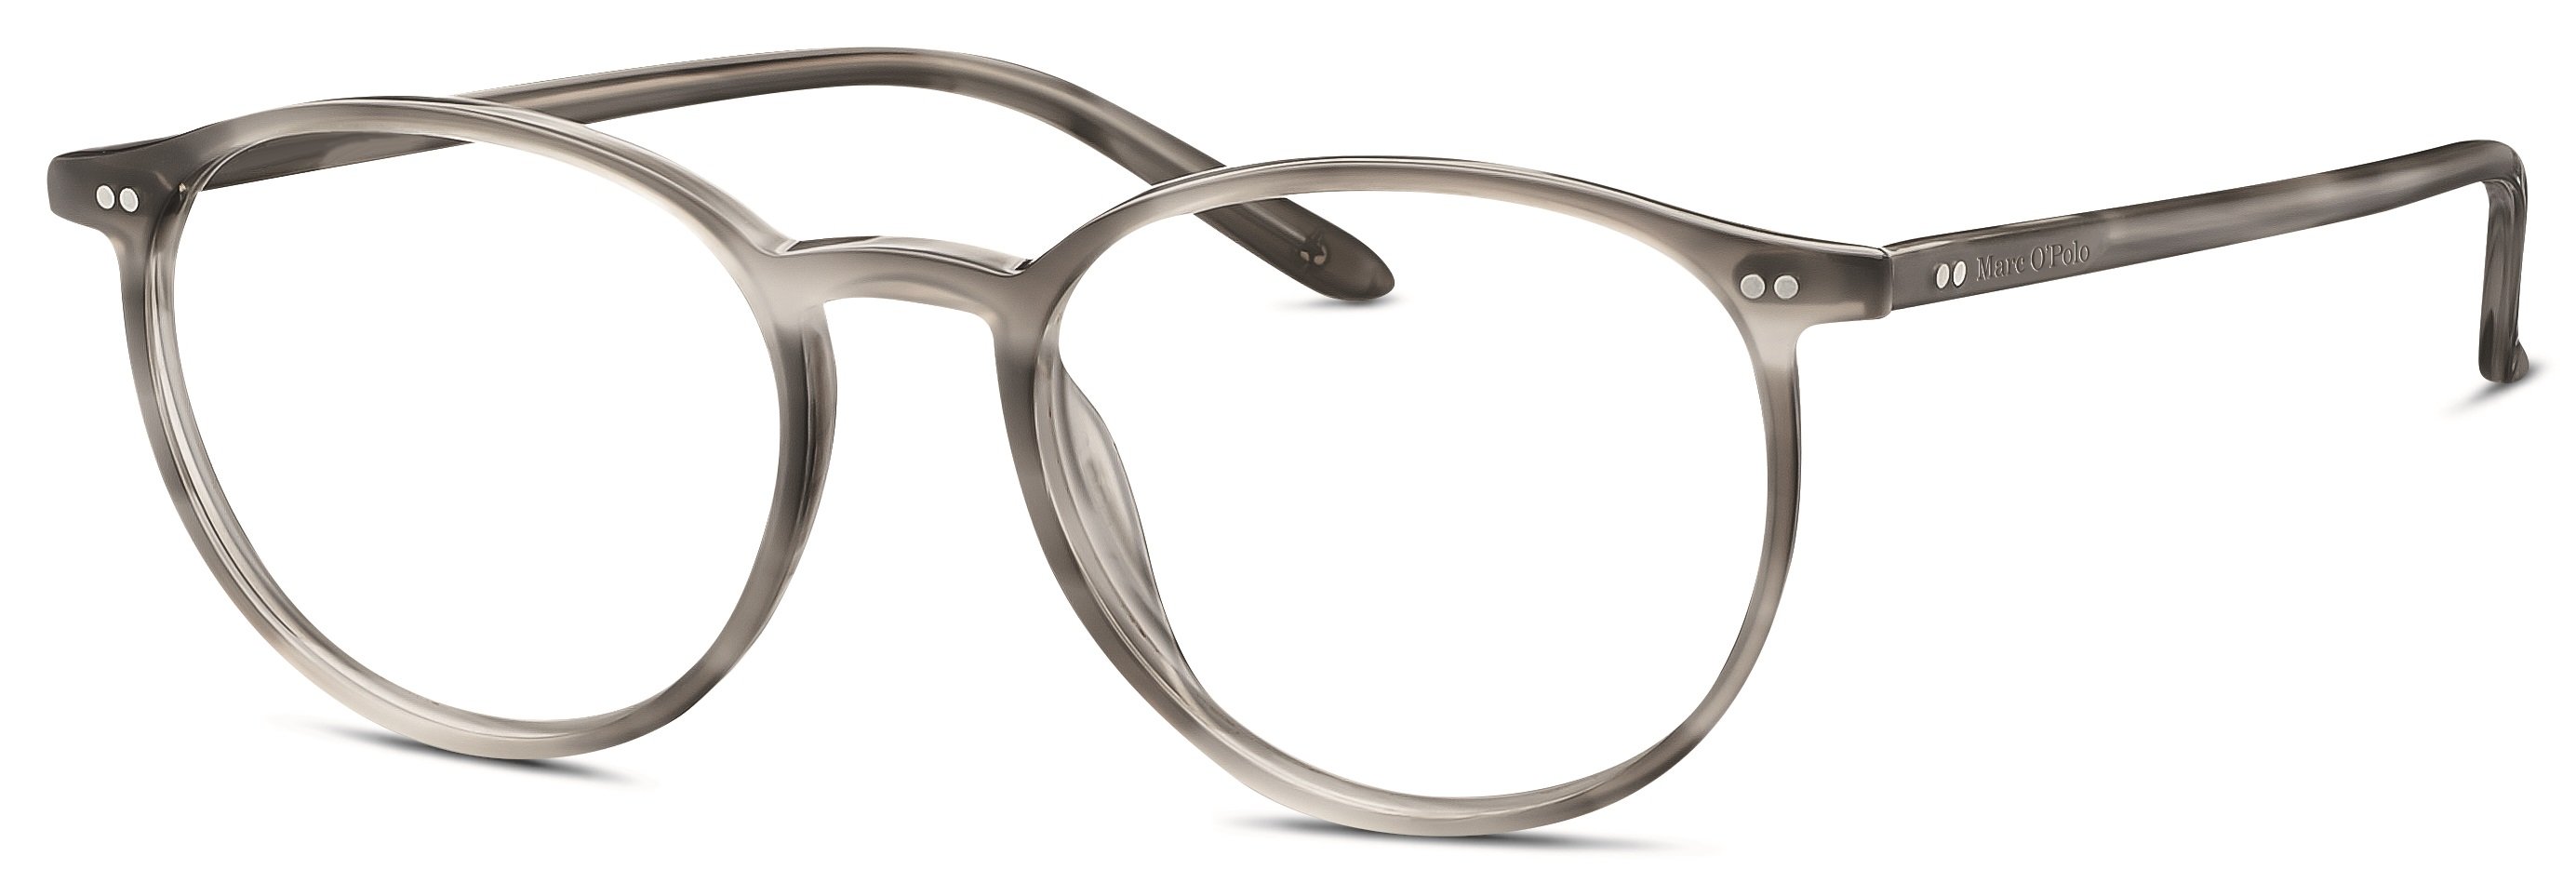 Das Bild zeigt die Korrektionsbrille 503084 33 von der Marke Marc o Polo in grau.